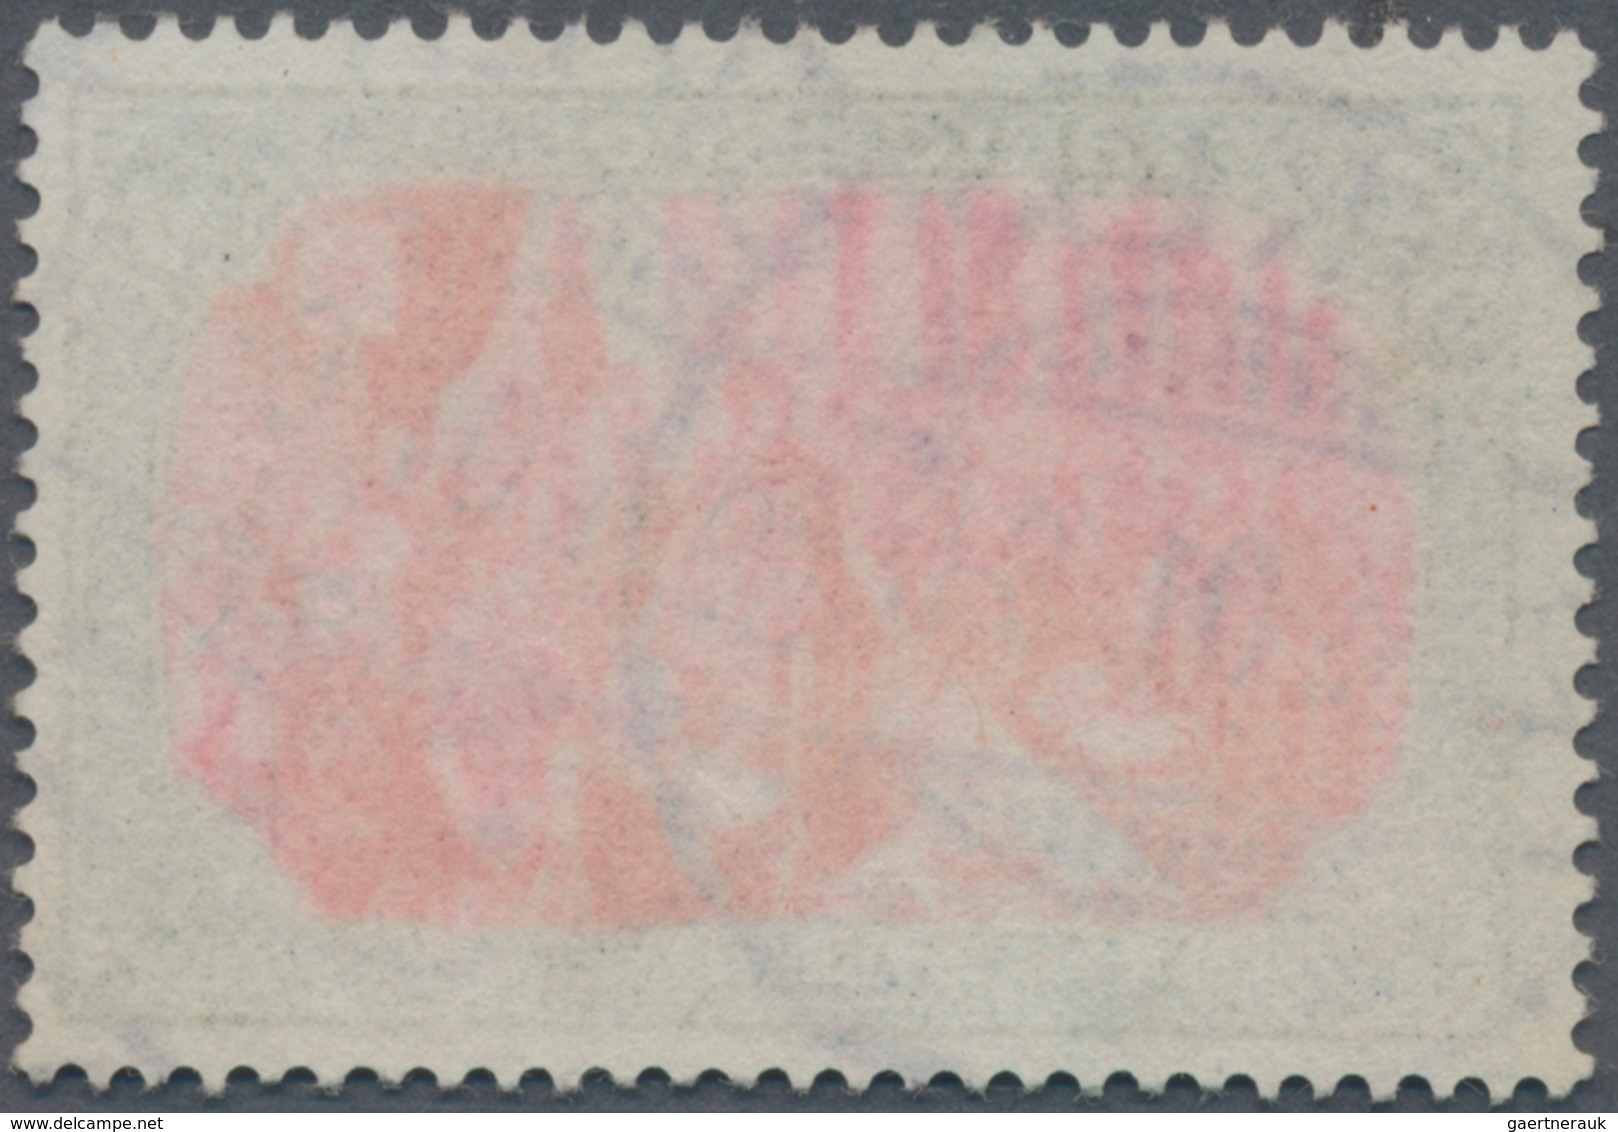 Deutsches Reich - Germania: 1902, Freimarke 5 M. Grünschwarz/bräunlichkarmin, Type I (Nachmalung Nur - Unused Stamps